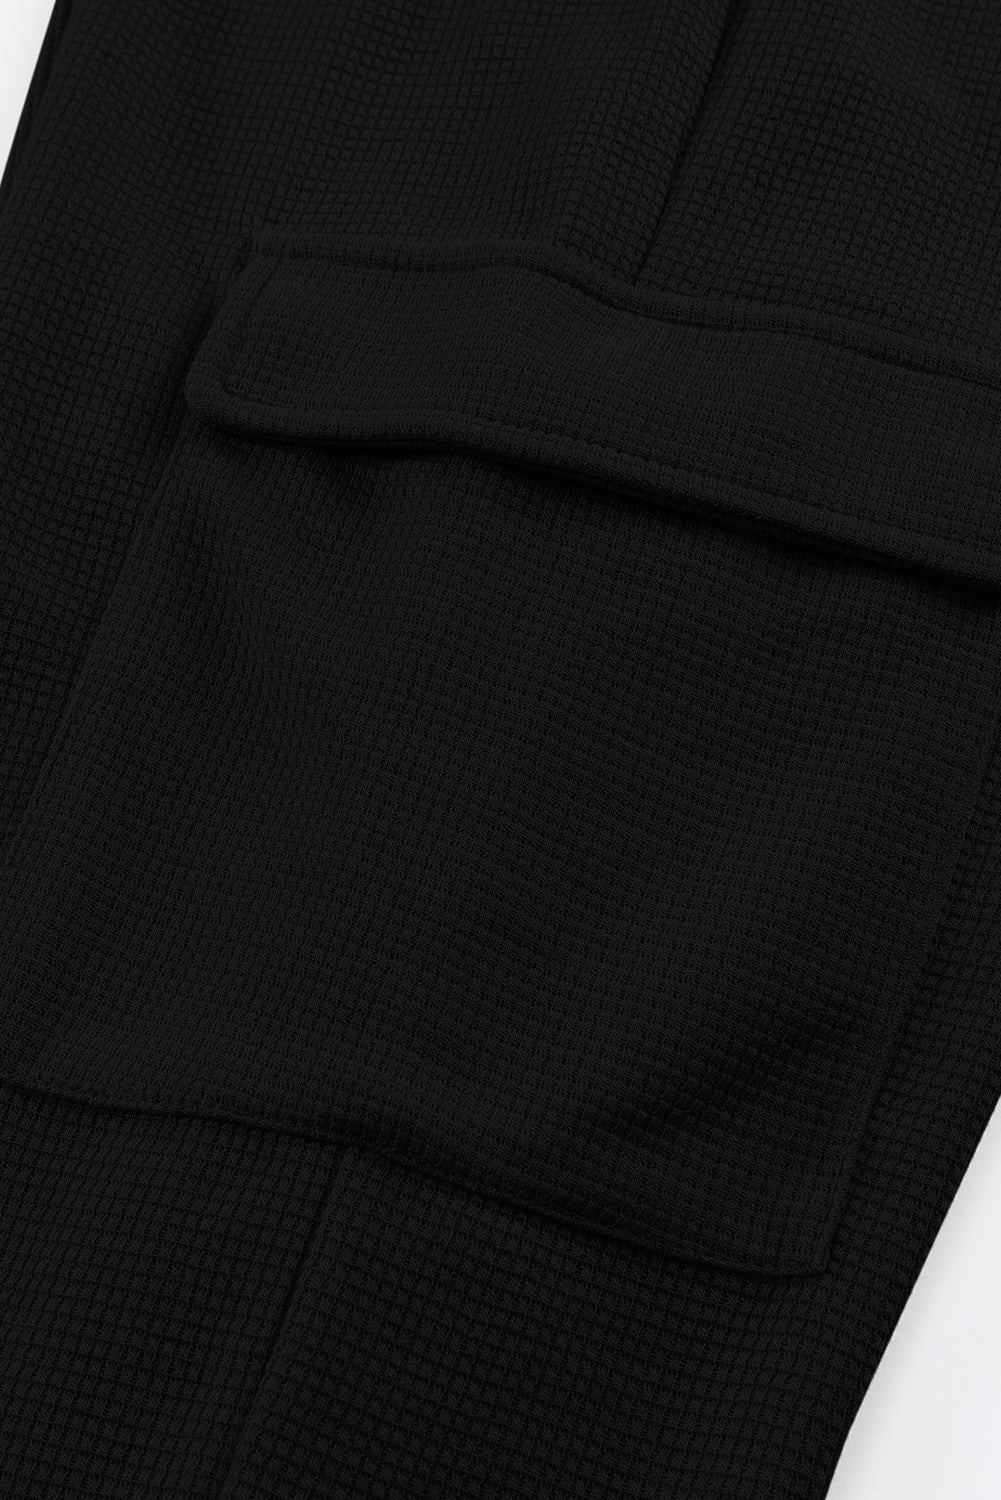 Crne hlače za trčanje s kargo džepovima teksture vafla